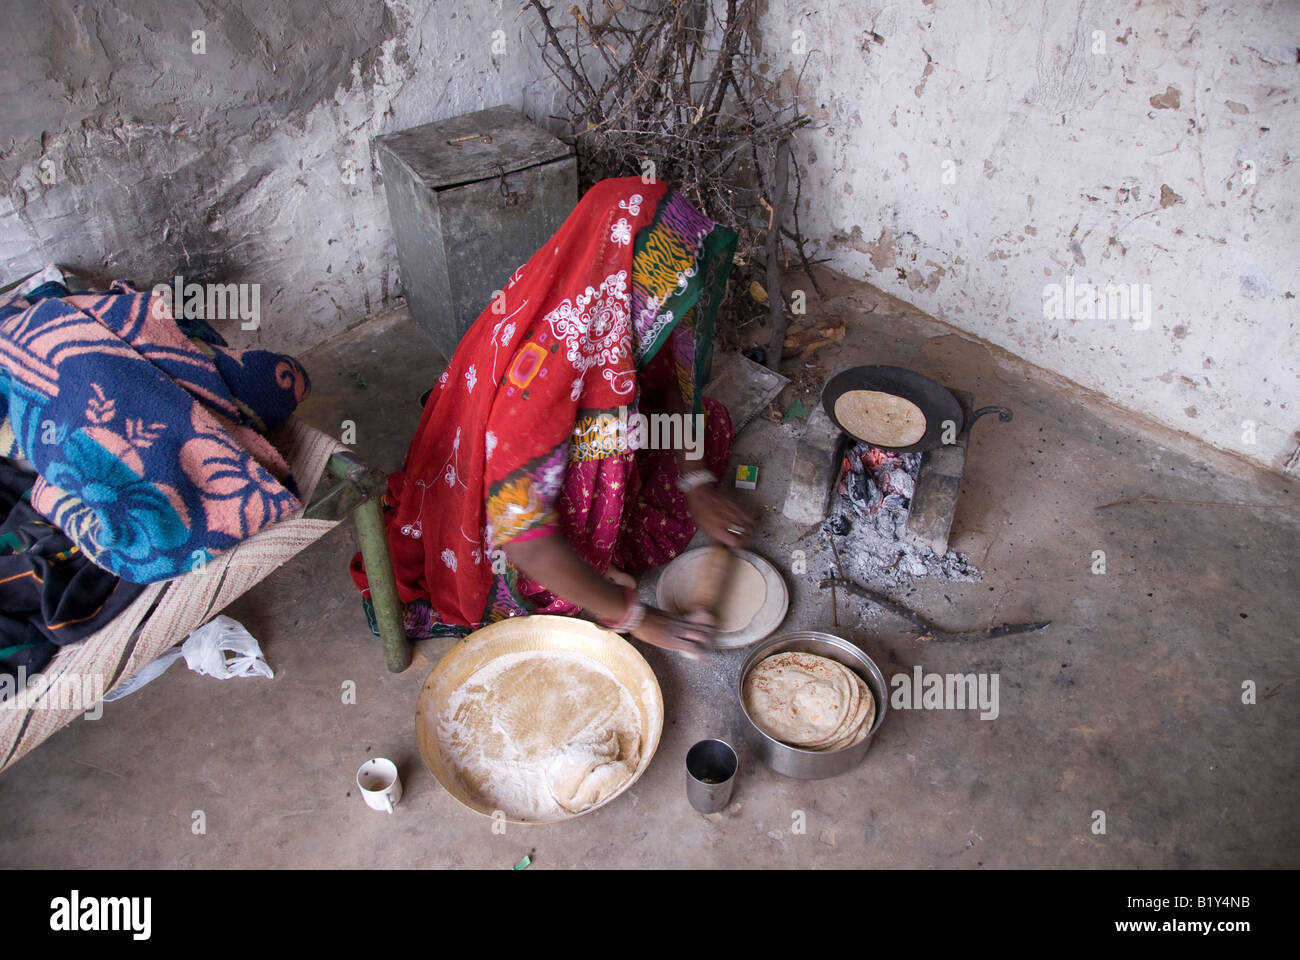 Frau aus Rajasthan (Indien) bereitet Essen. Kochen auf traditionellen Herd im Hof des Hauses. Typische Kleidung und Gefäße. Stockfoto